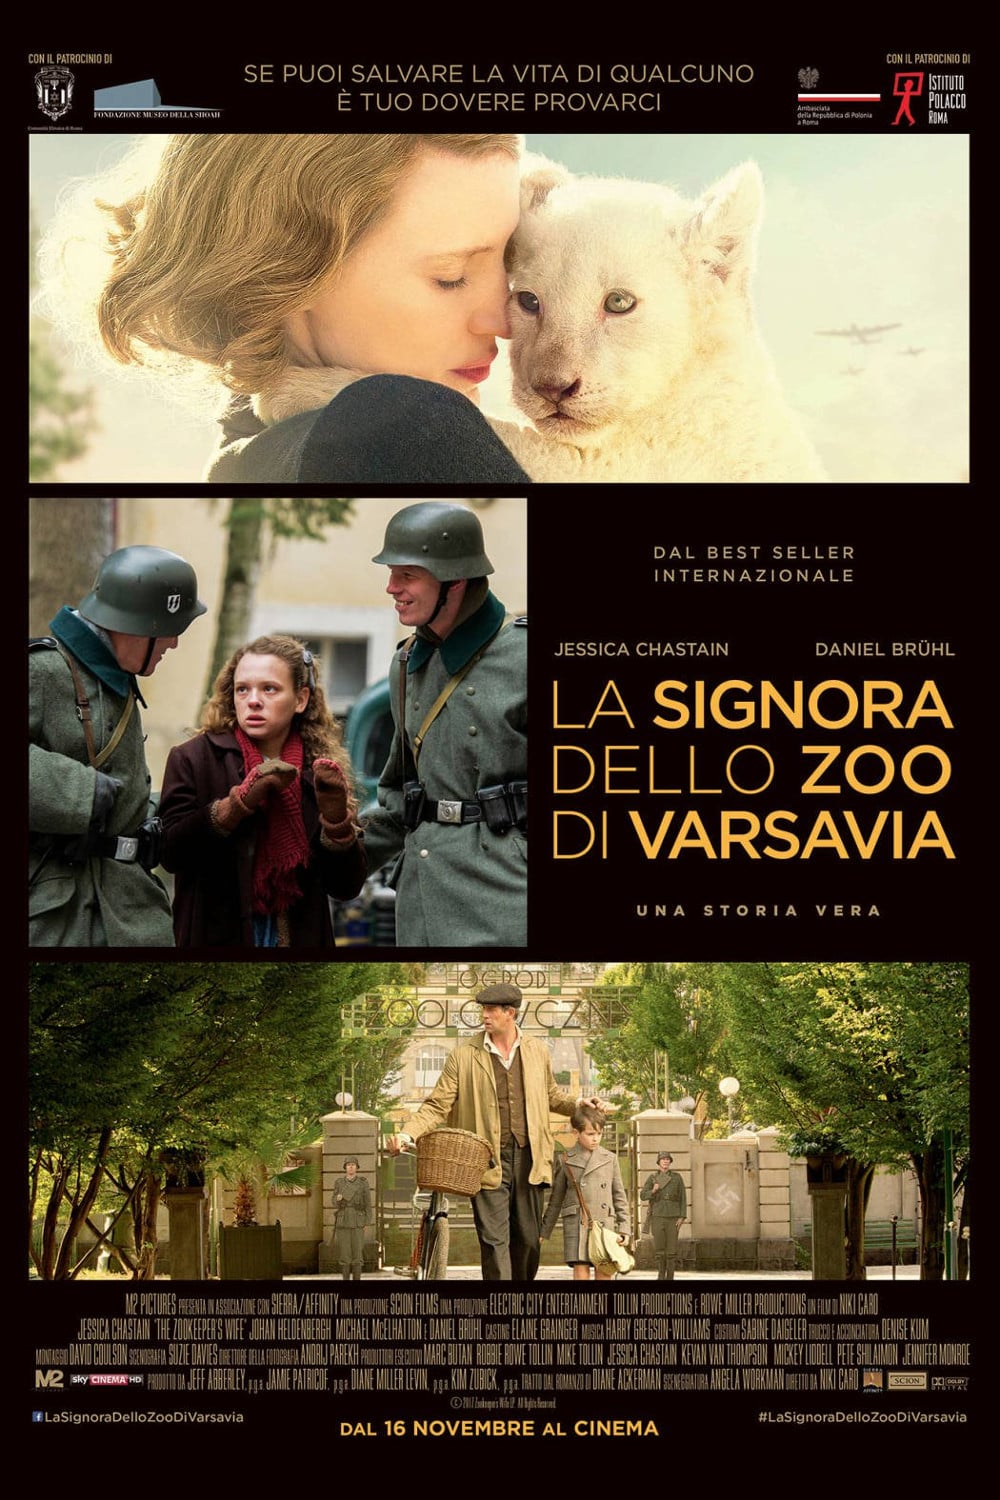 Poster for the movie "La signora dello zoo di Varsavia"